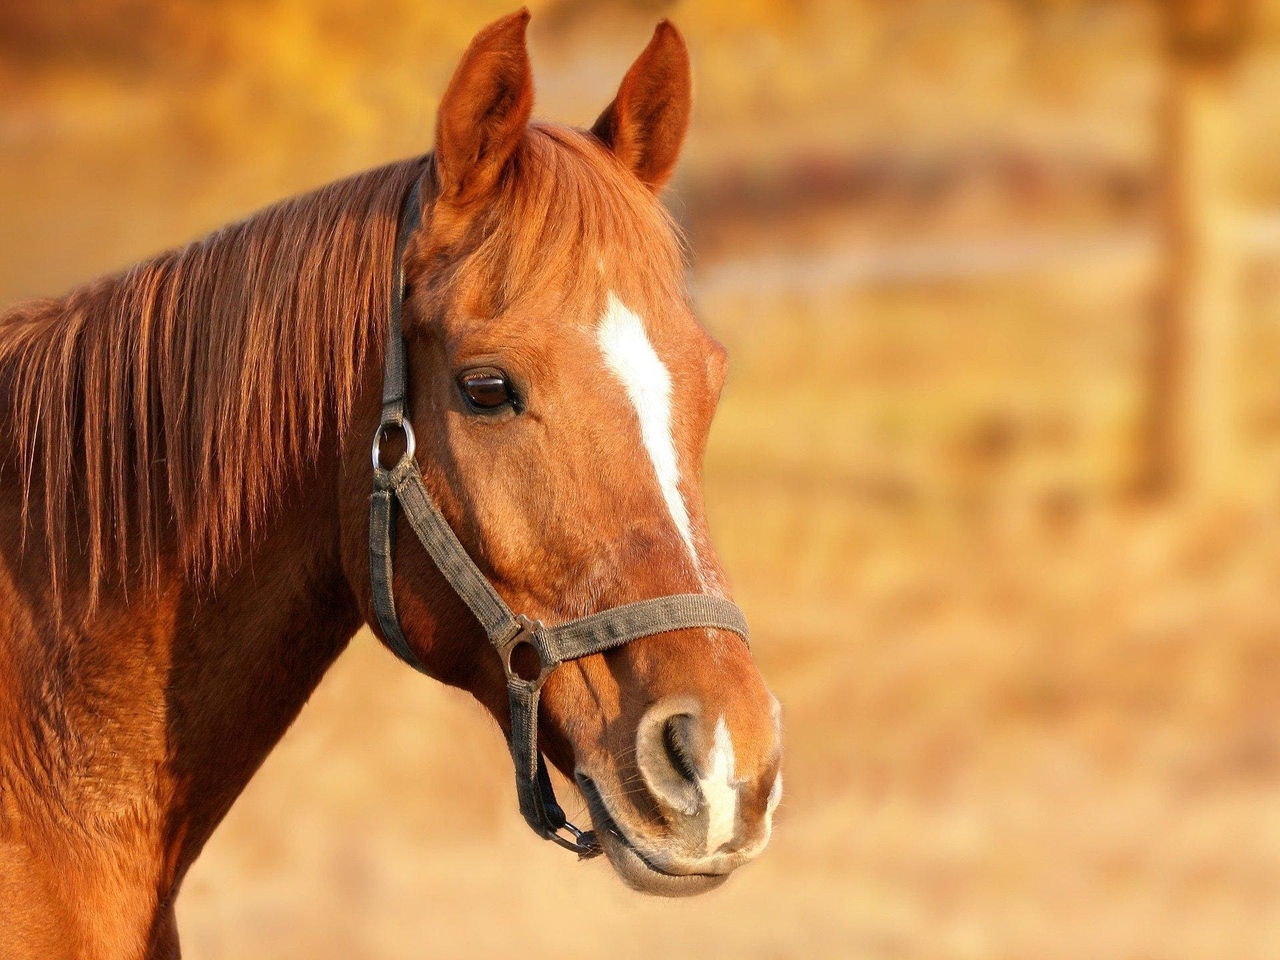 Acidente com cavalo foi registrado na zona rural de Divinópolis (IMAGEM ILUSTRATIVA)